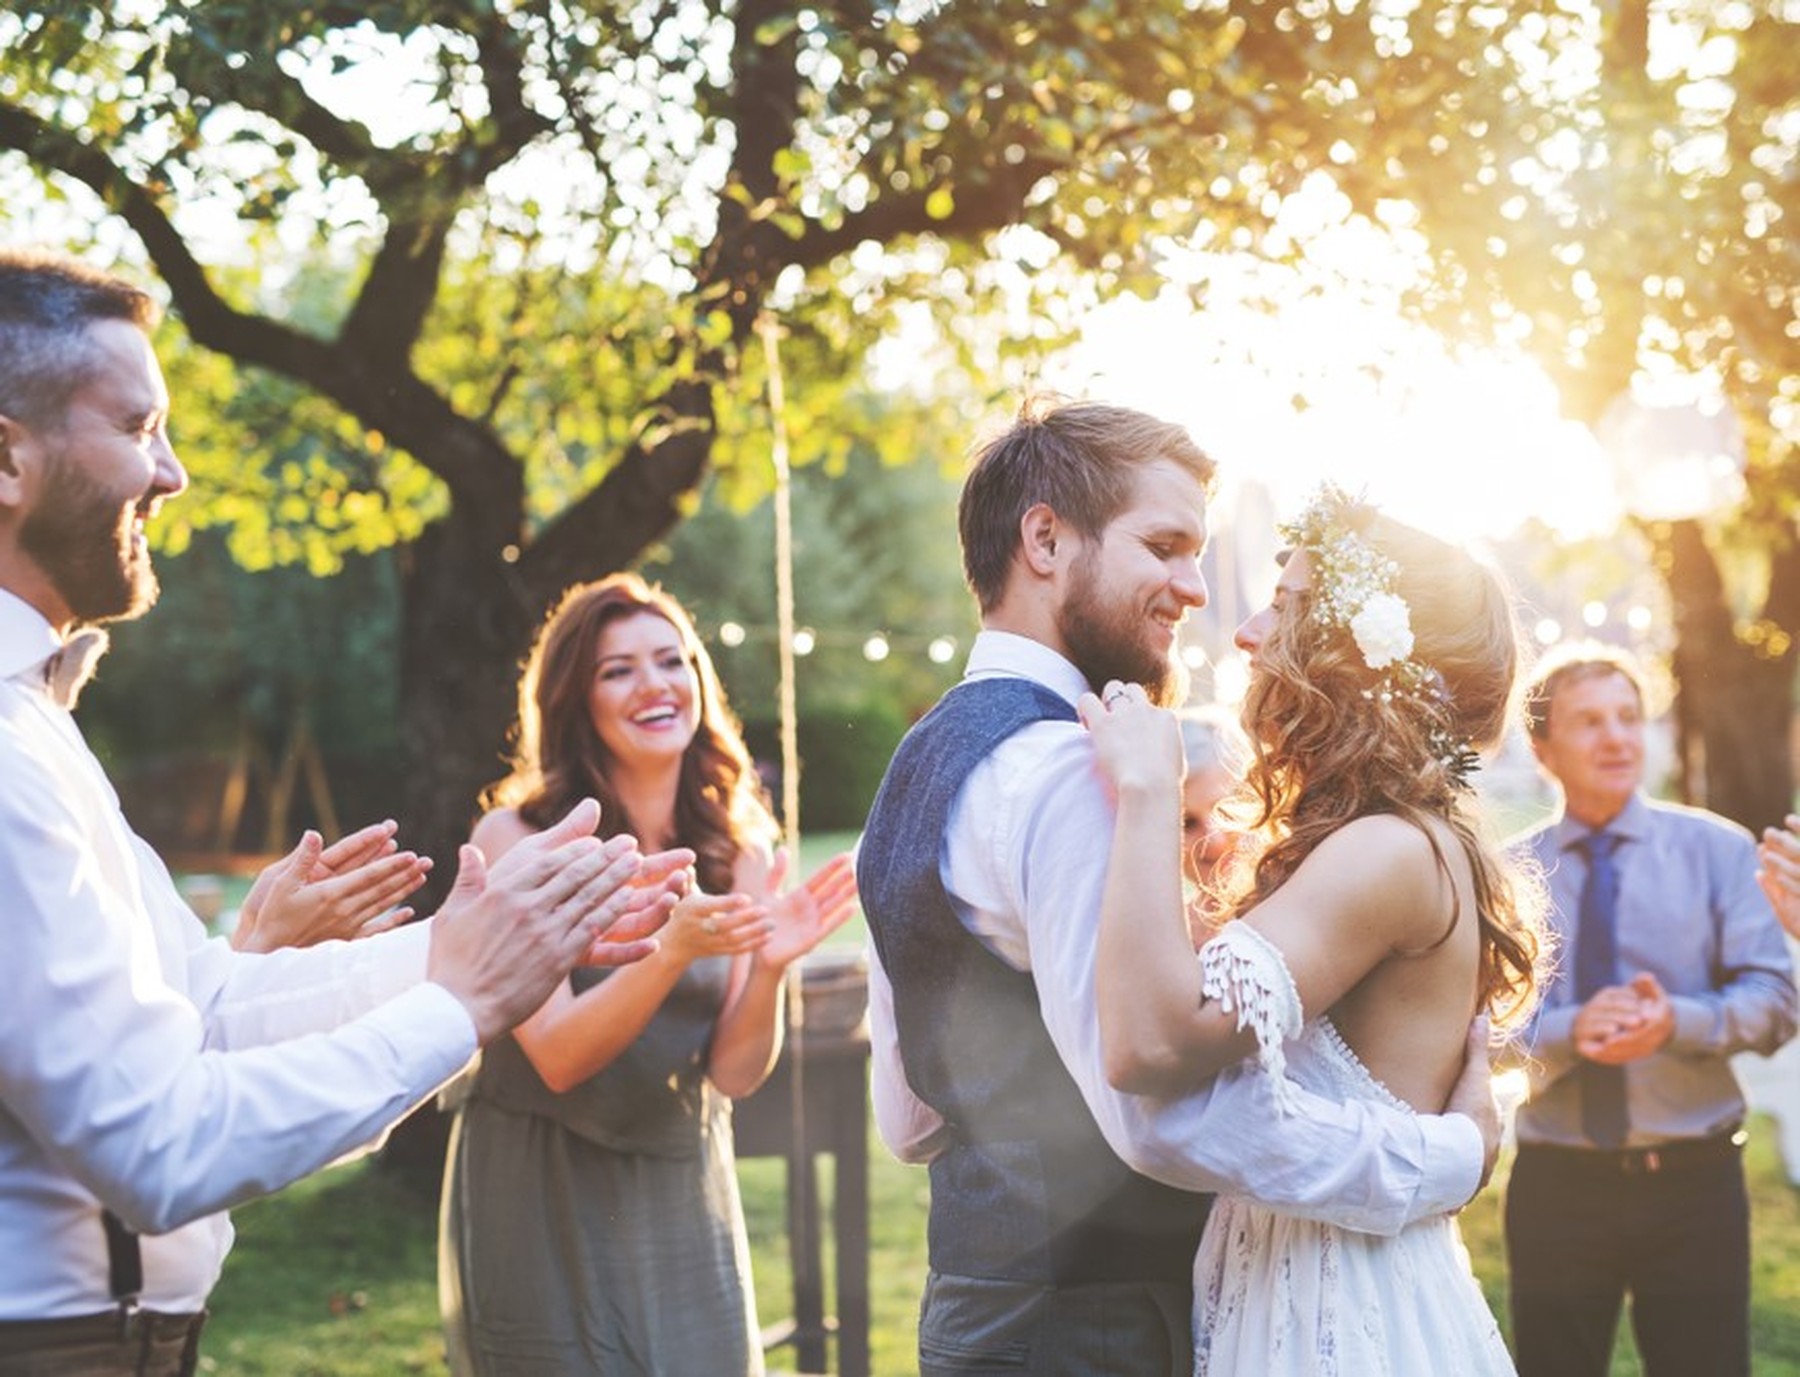 Una pareja de recién casados bailando en su boda con los invitados aplaudiendo